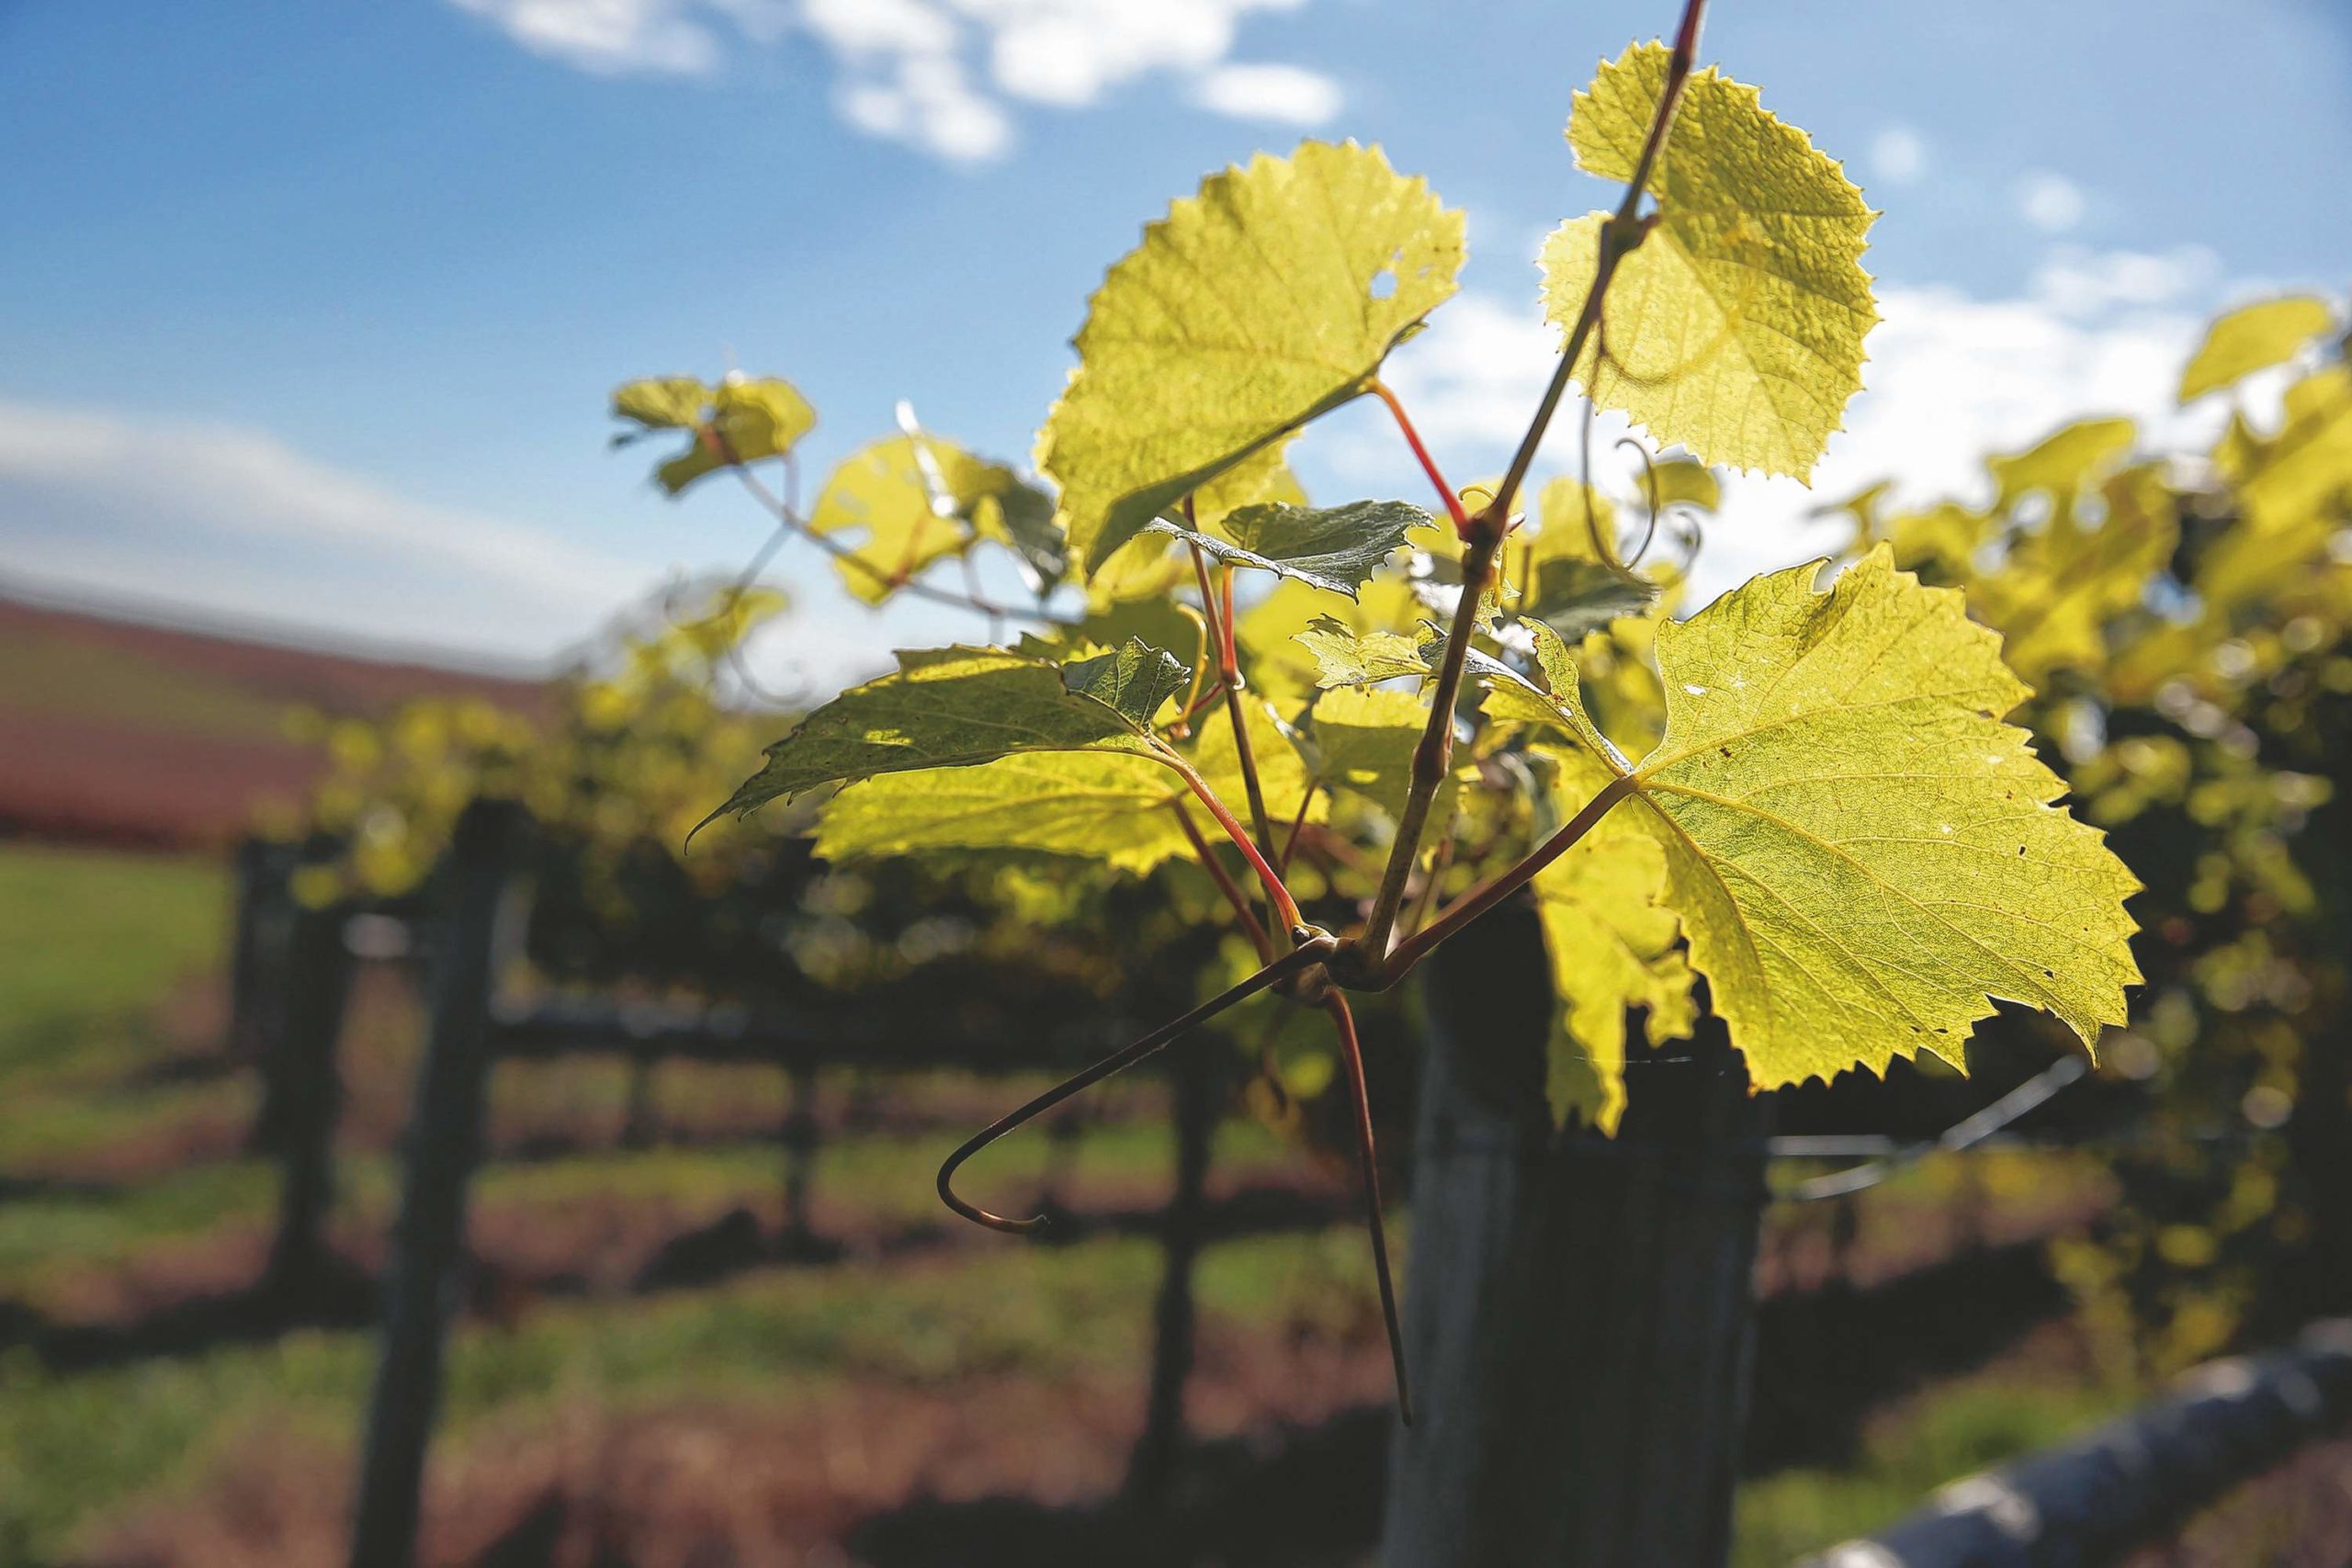 Carmel Ridge Winery